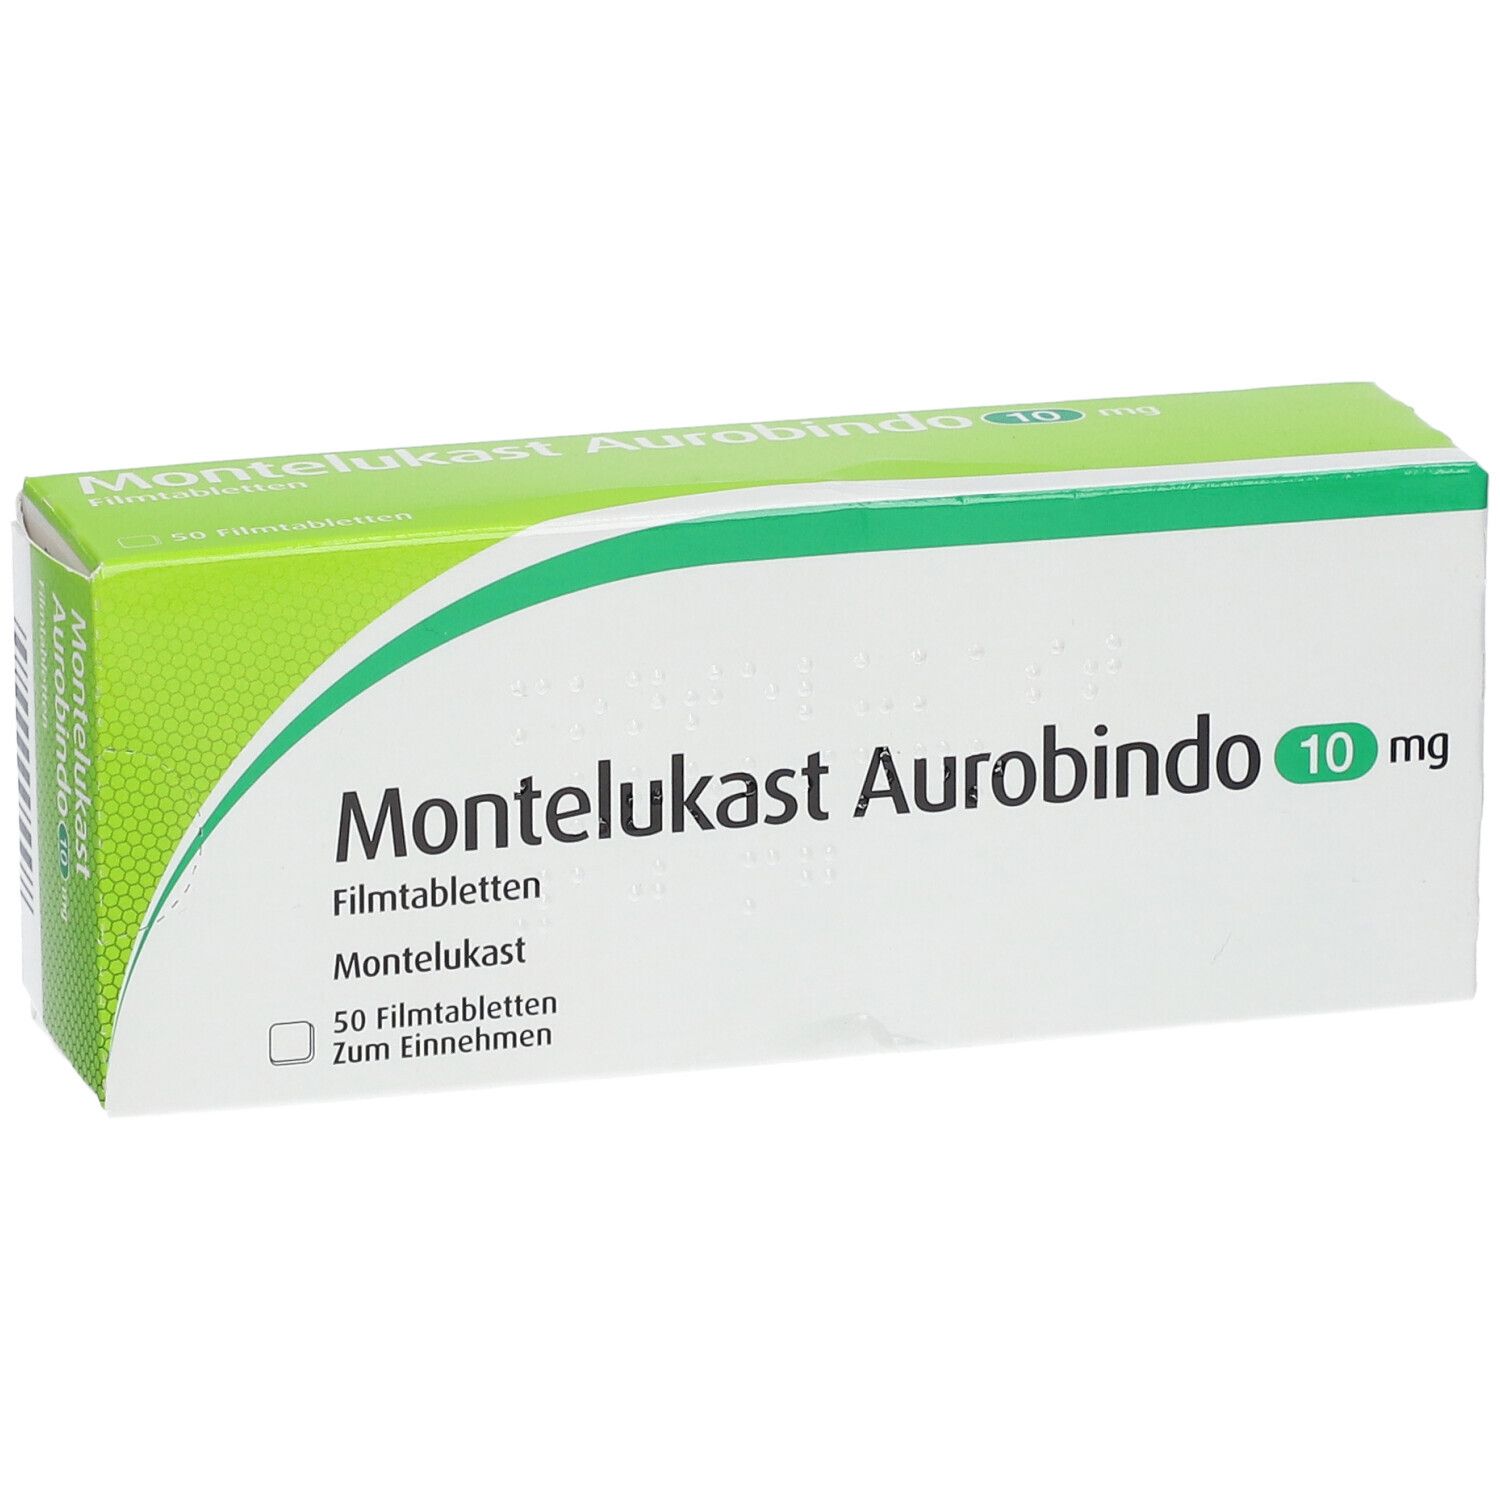 Montelukast Aurobindo 10 mg